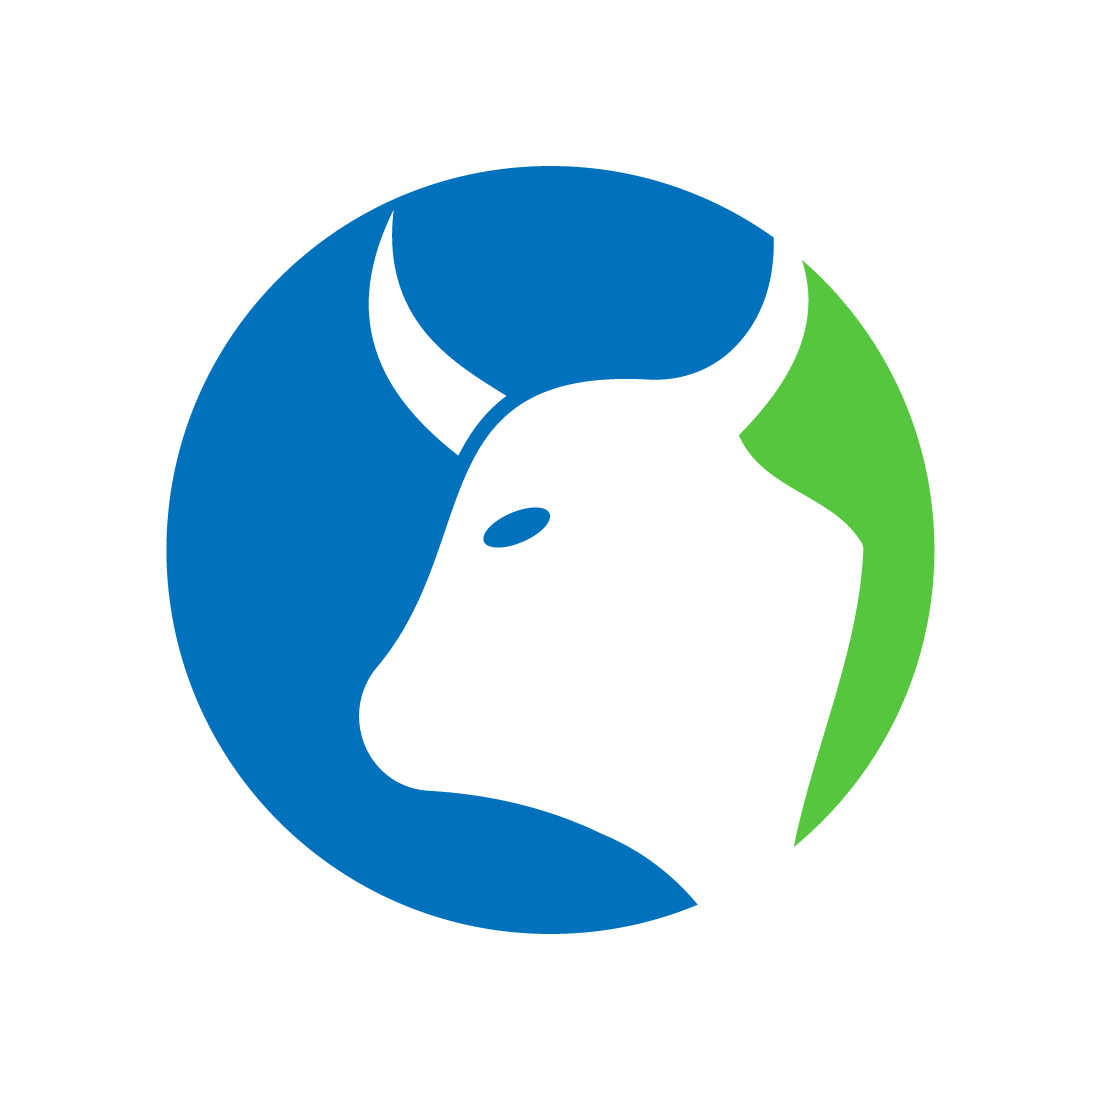 Creative Cow head logo design, Vector design template preview image.